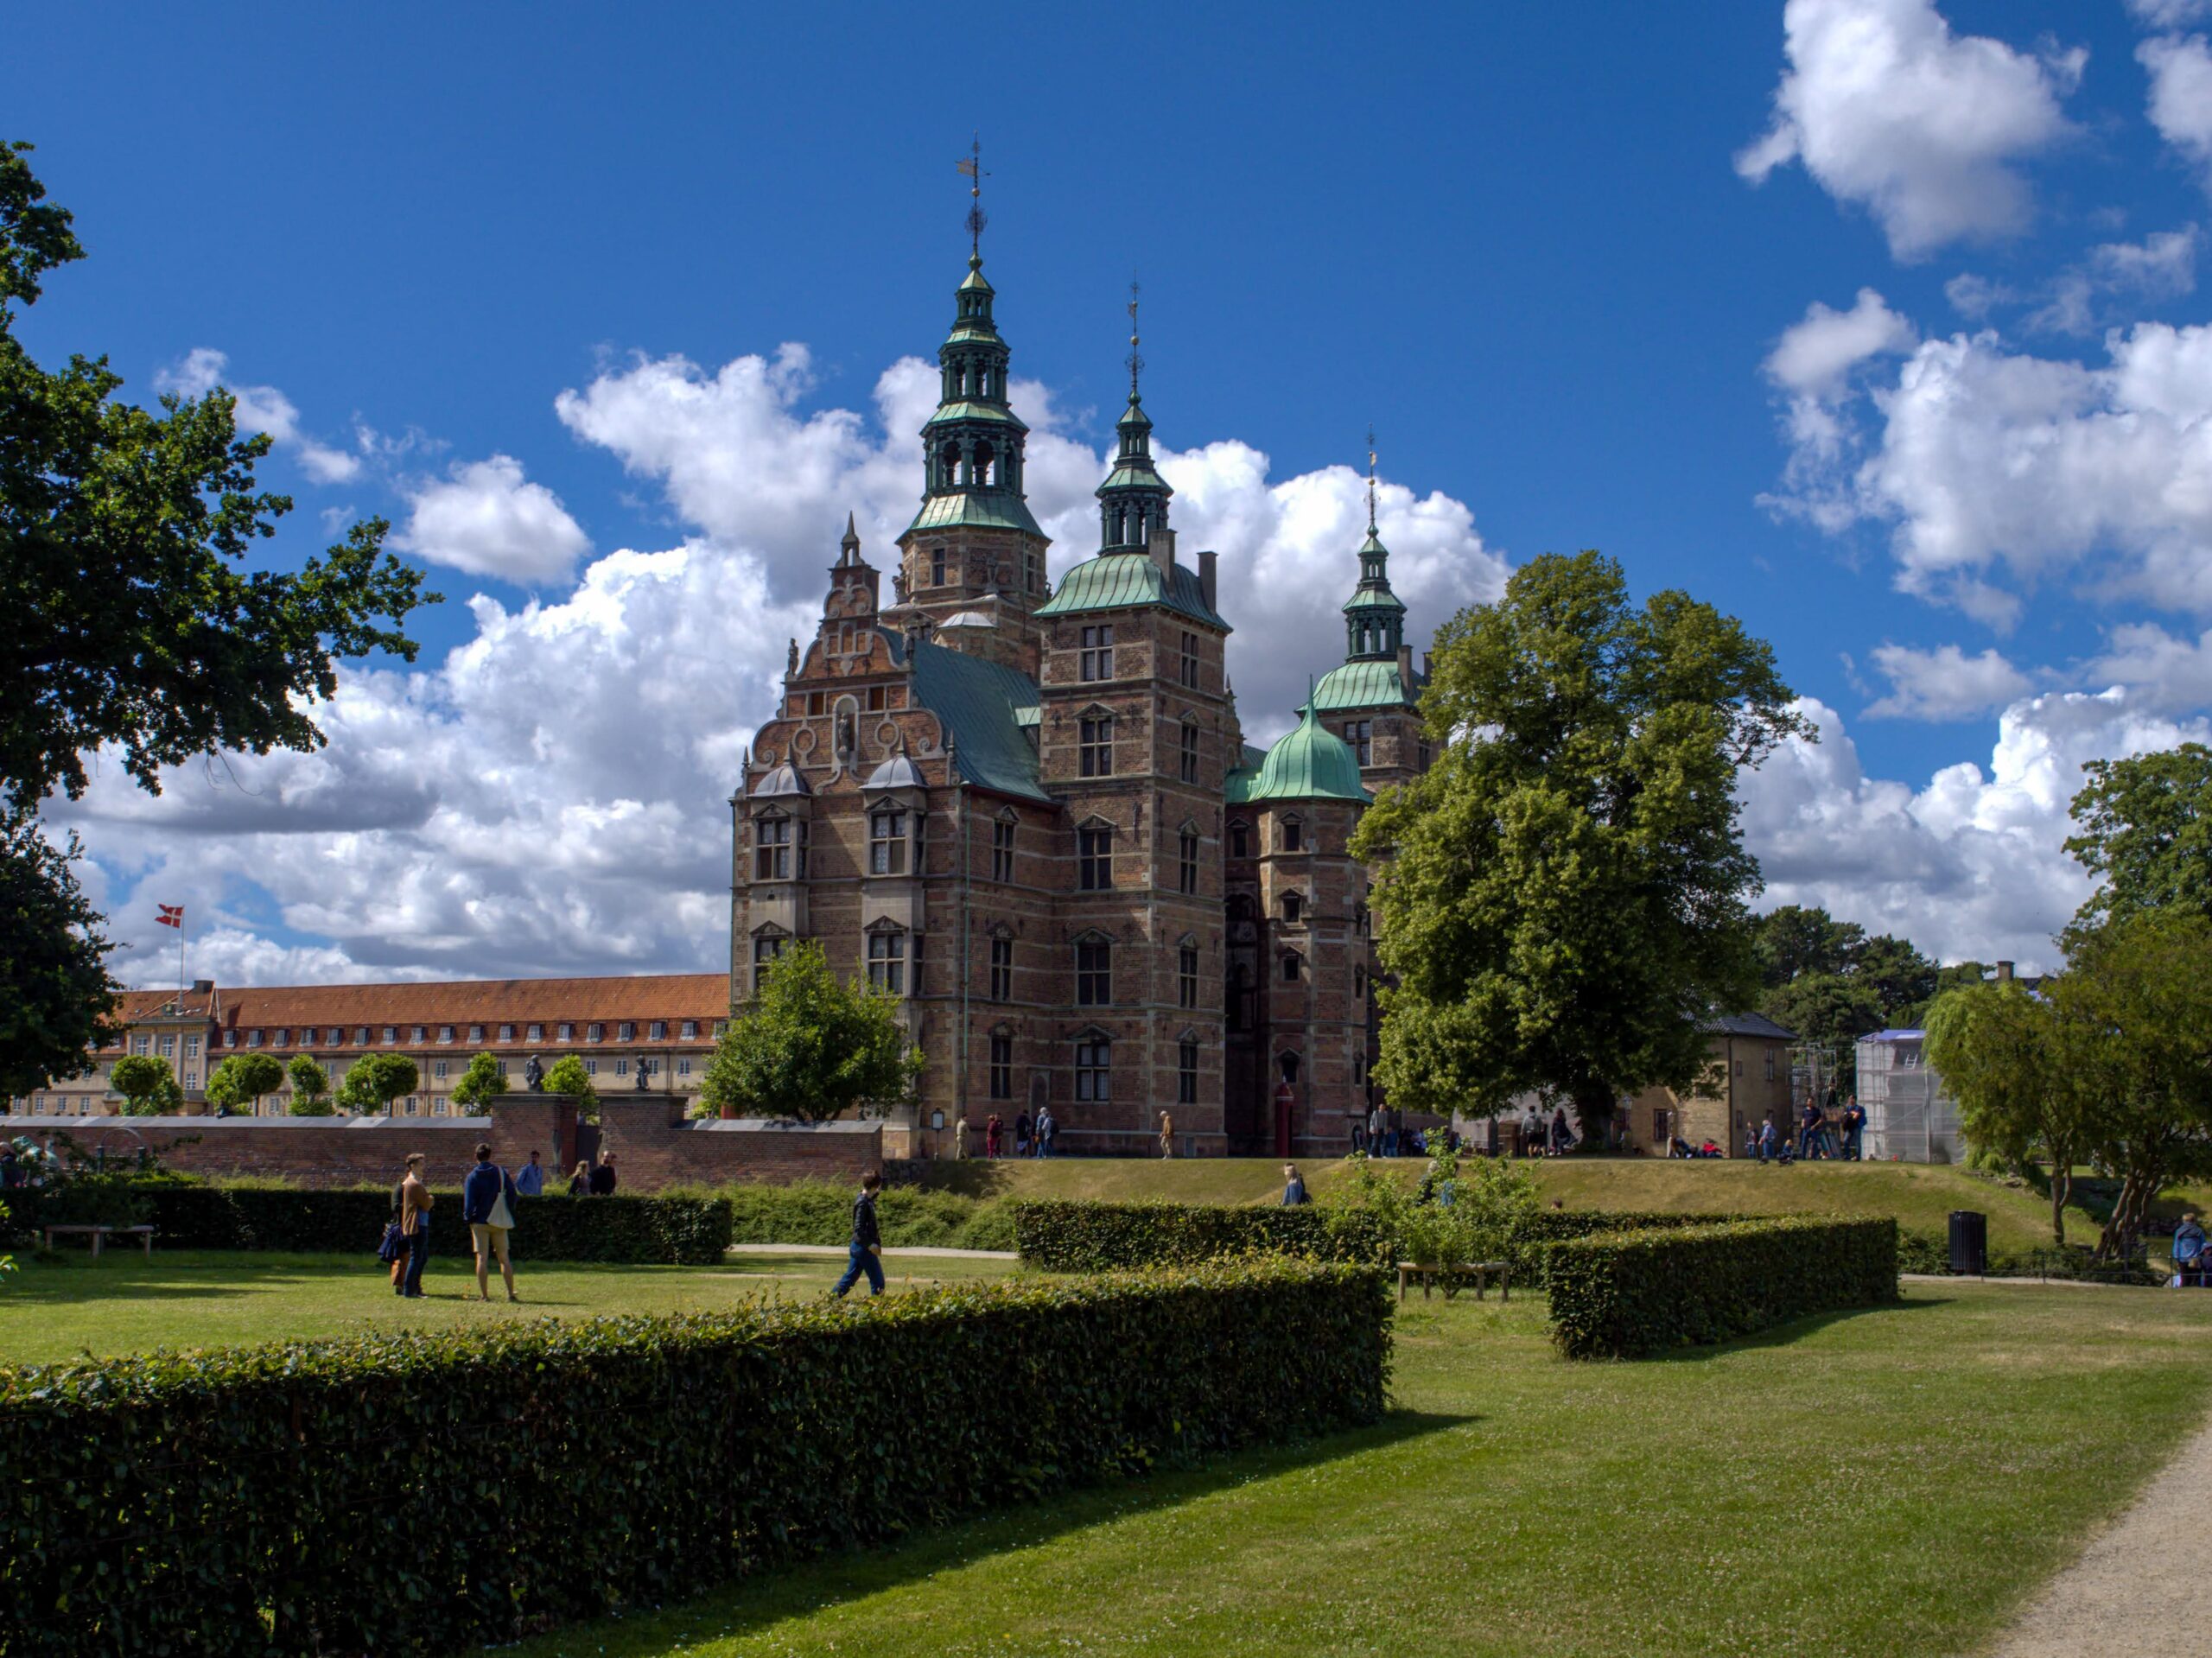 pałac w Kopenhadze Rosenborg